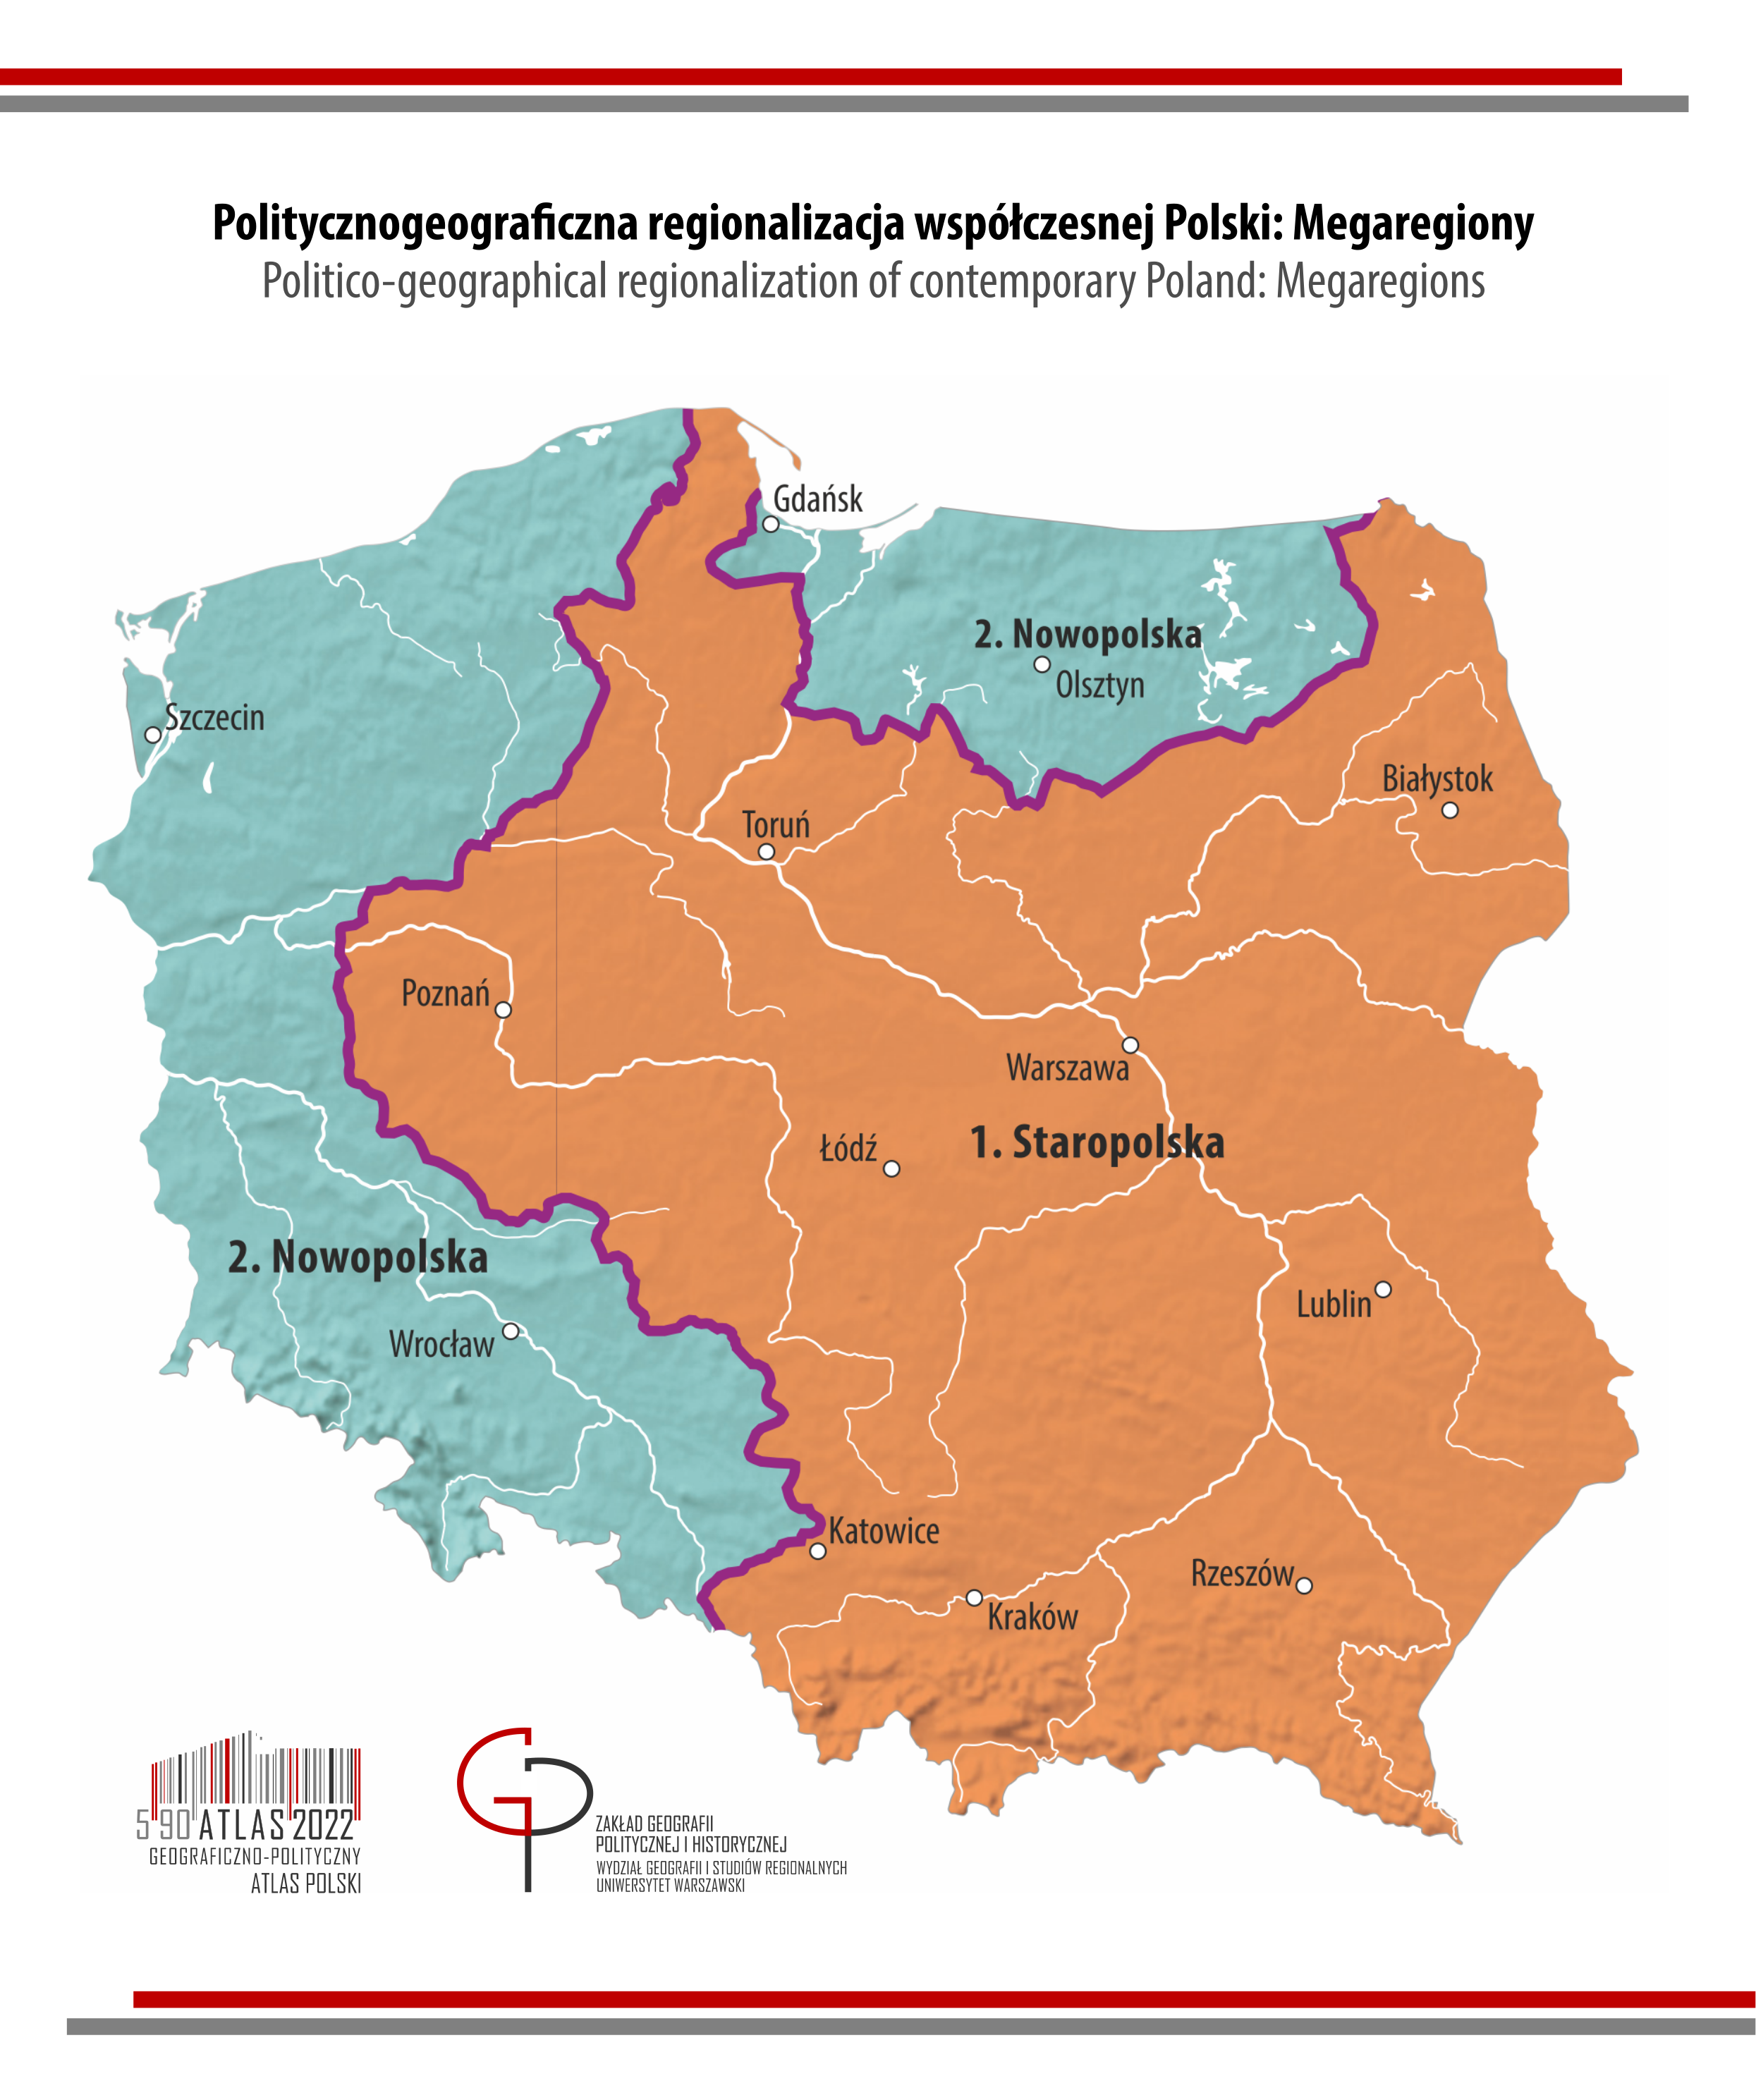 POLITYCZNOGEOGRAFICZNA REGIONALIZACJA WSPÓŁCZESNEJ POLSKI: megaregiony